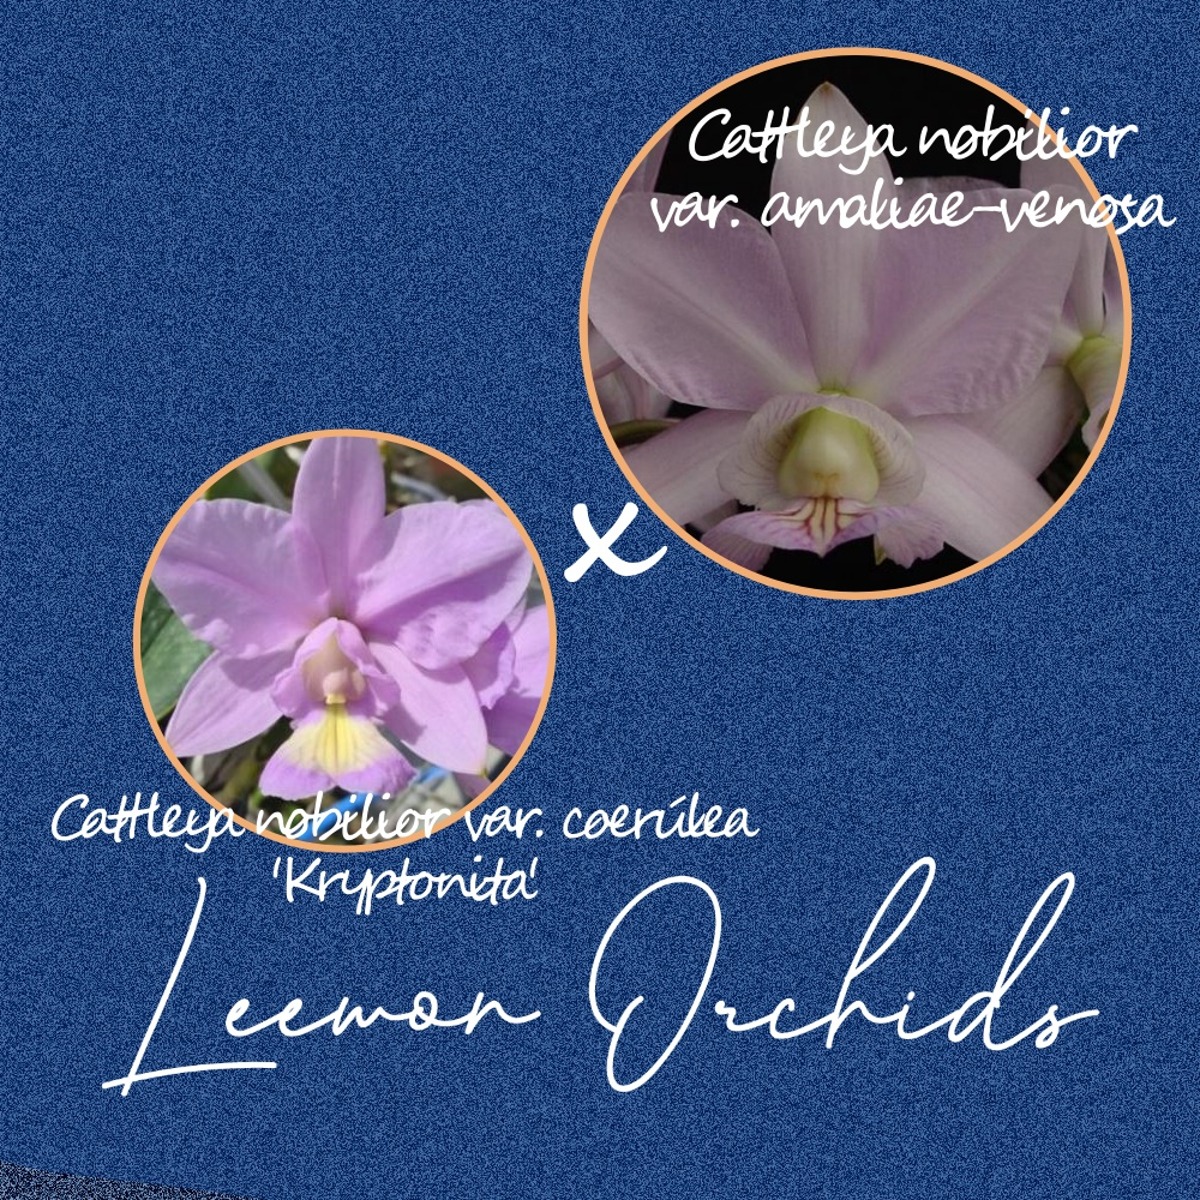 [브라질 KRYXV] Cattleya nobilior var. coerúlea &#039;Kryptonita&#039; x amaliae-venosa (유묘/ 온라인 한정재고: 4)